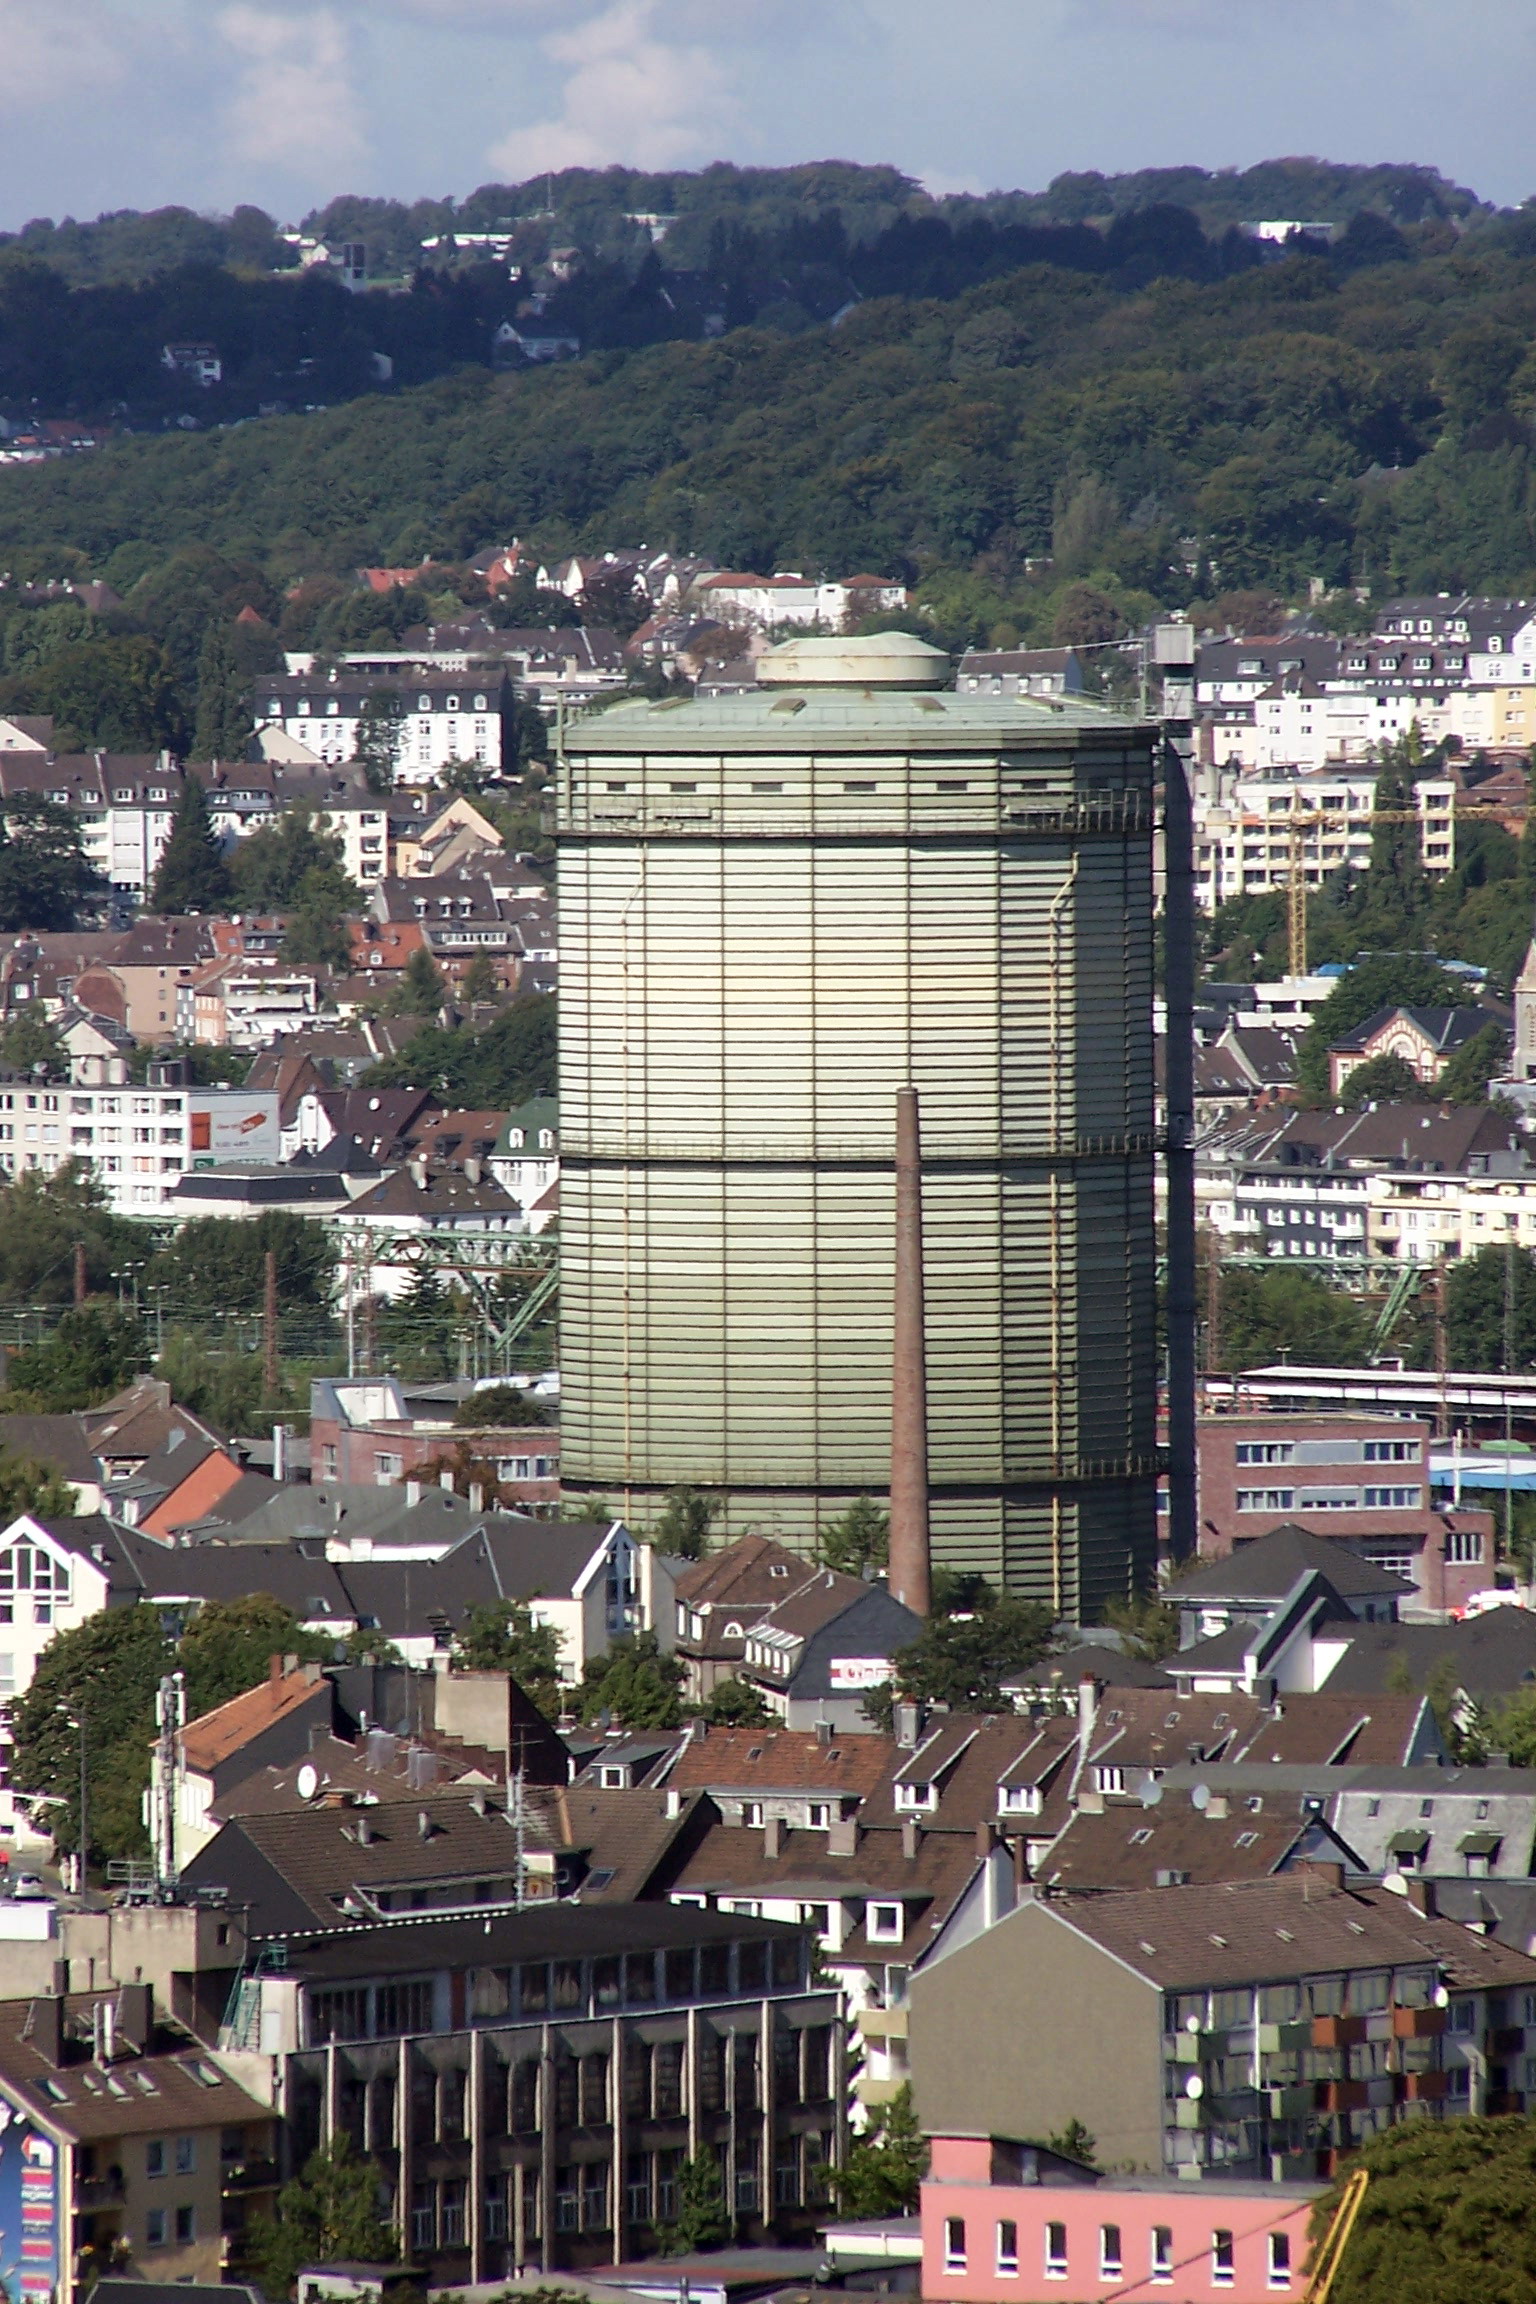 und noch ein Foto
vom Gaskessel
in Wuppertal-Heckinghausen,
den wir von unserem Haus sehen k&ouml;nnen